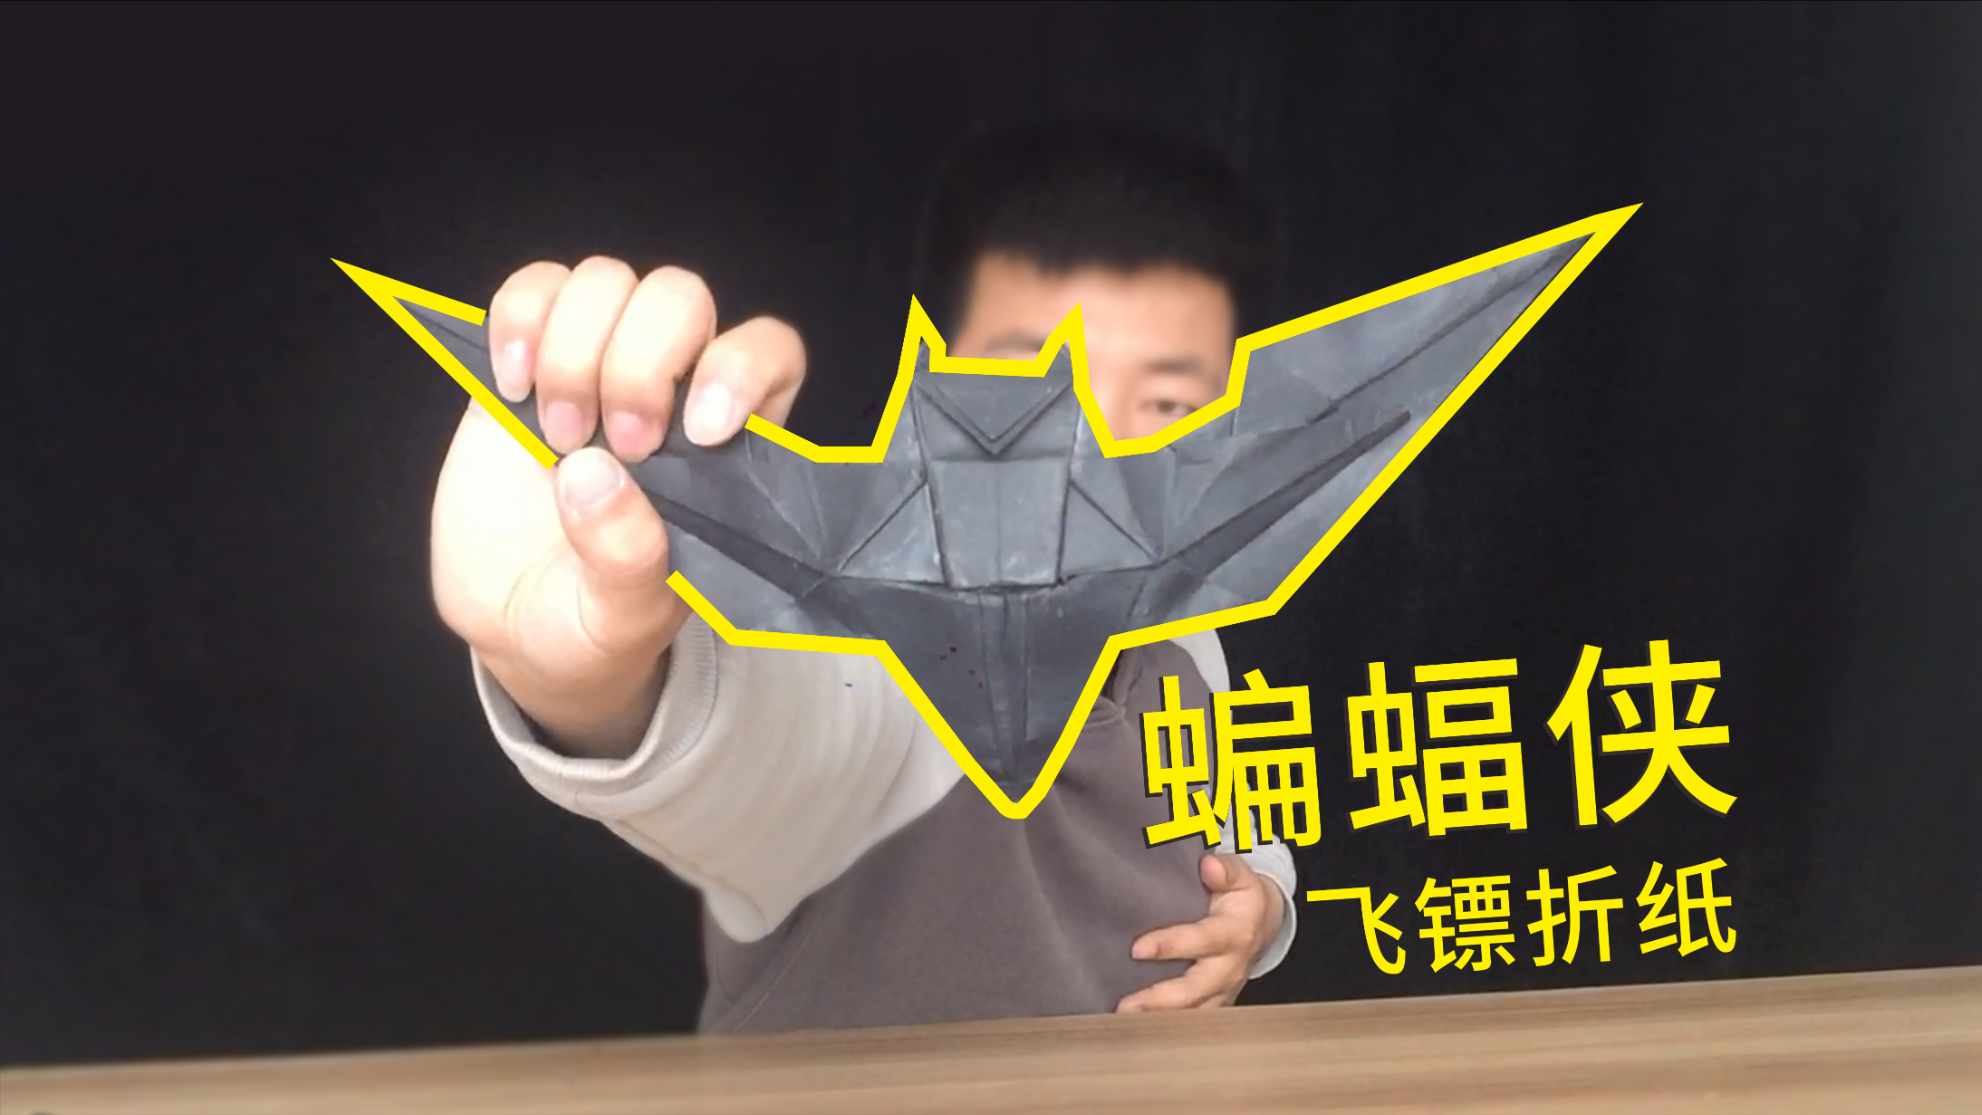 蝙蝠侠飞镖折纸:做出来超好看,一步一步教你!